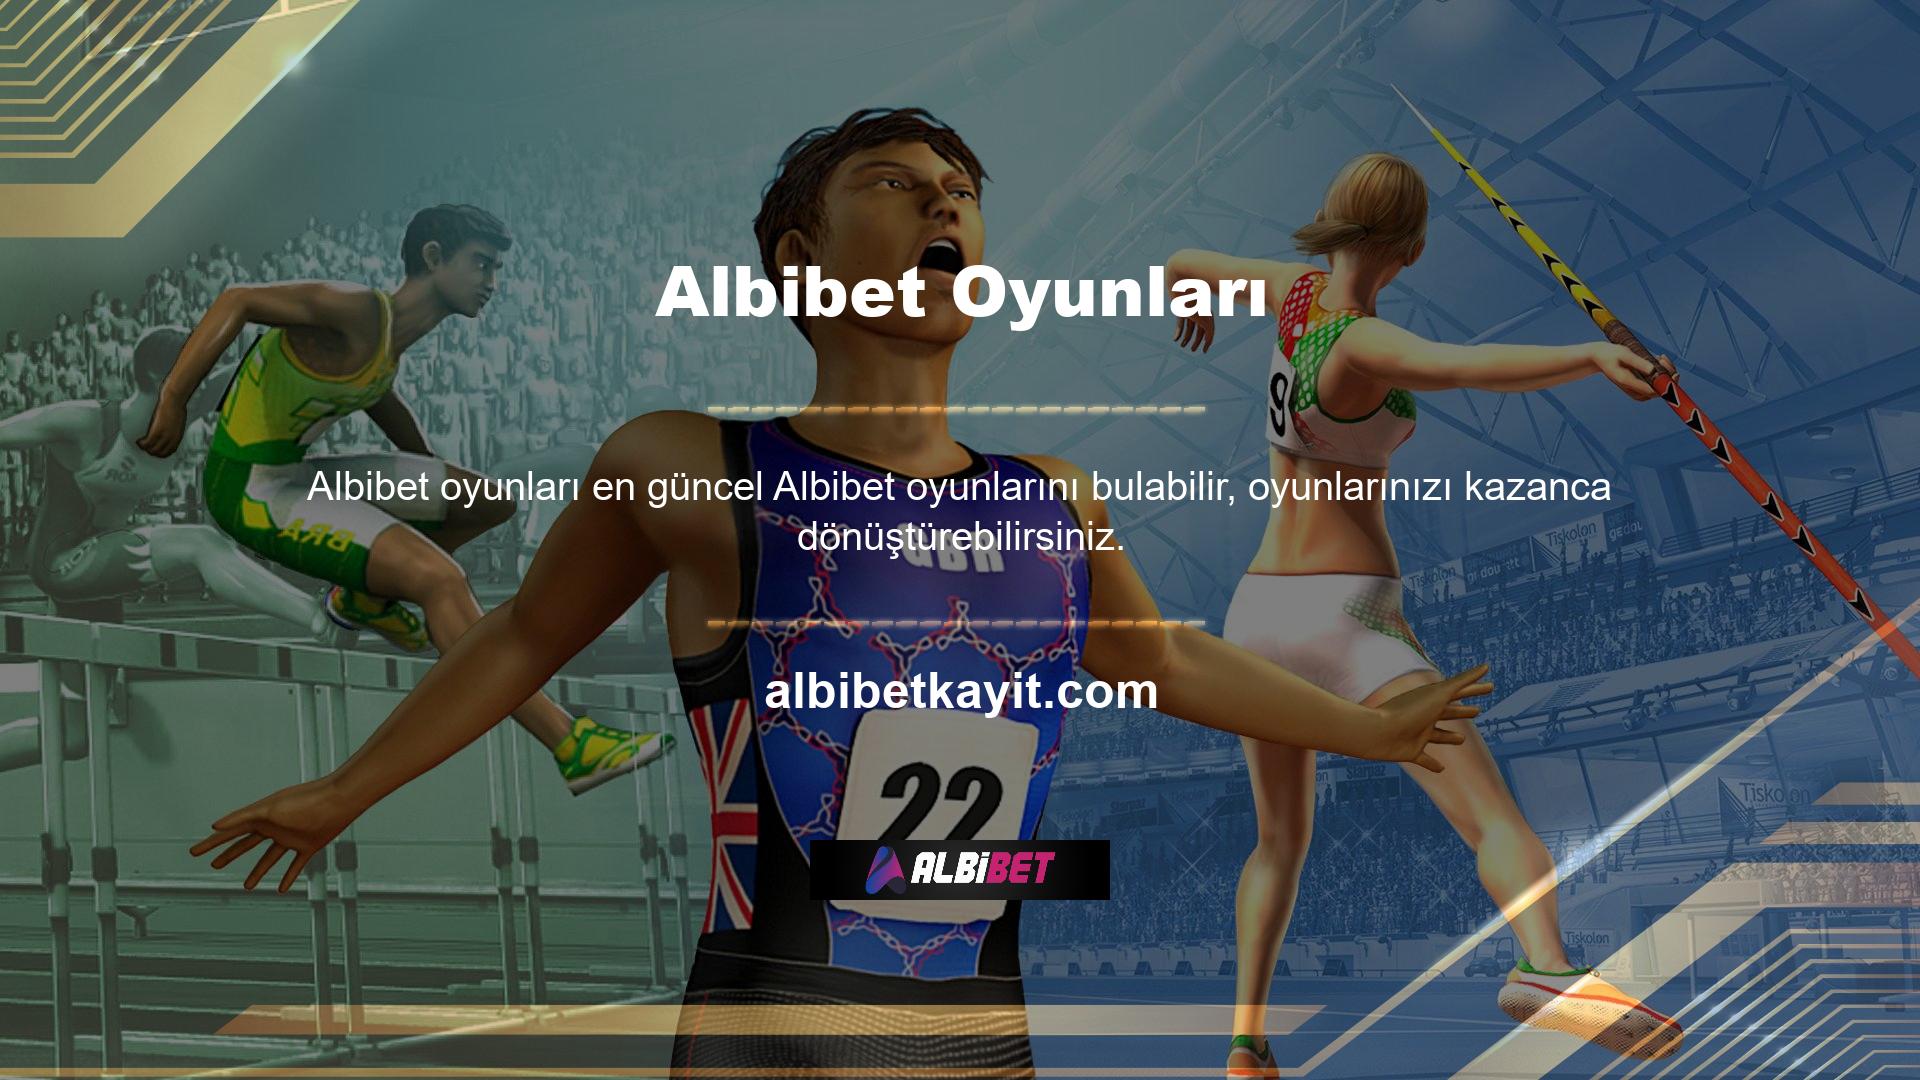 Albibet web sitesine giriş yaptıktan sonra Albibet hesabınıza giriş yapın ve hemen kullanıcılar için hazırlanan tanıtım sayfasına giriş yapın